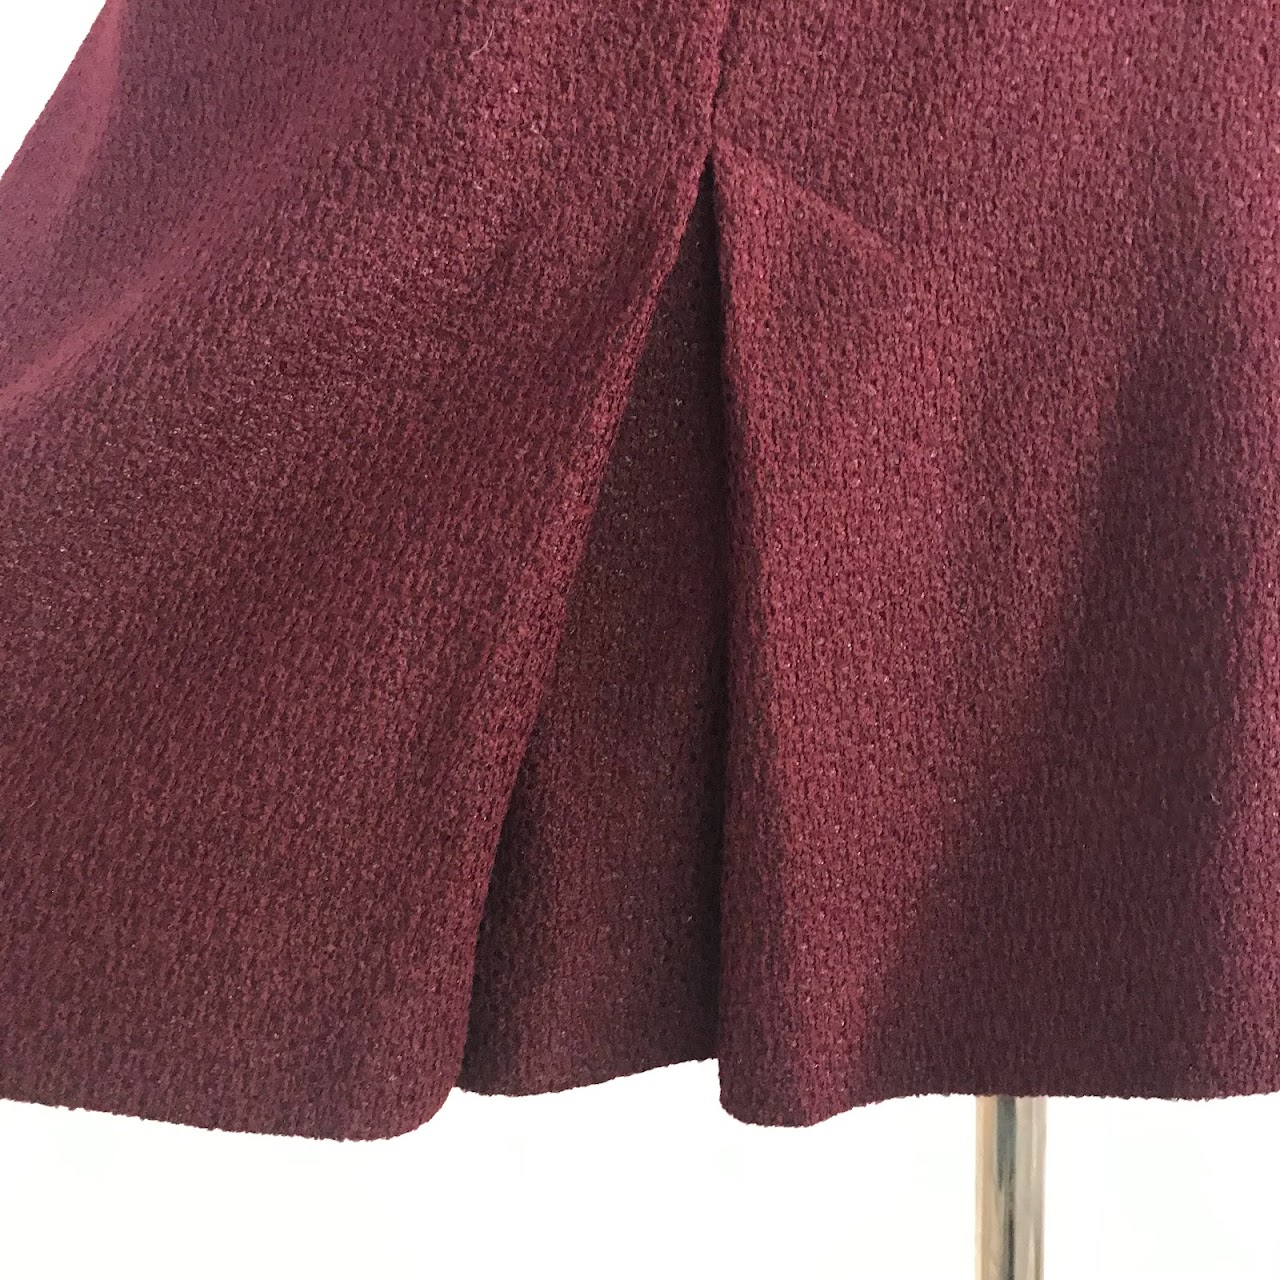 Chanel NEW Pleated Bouclé Skirt